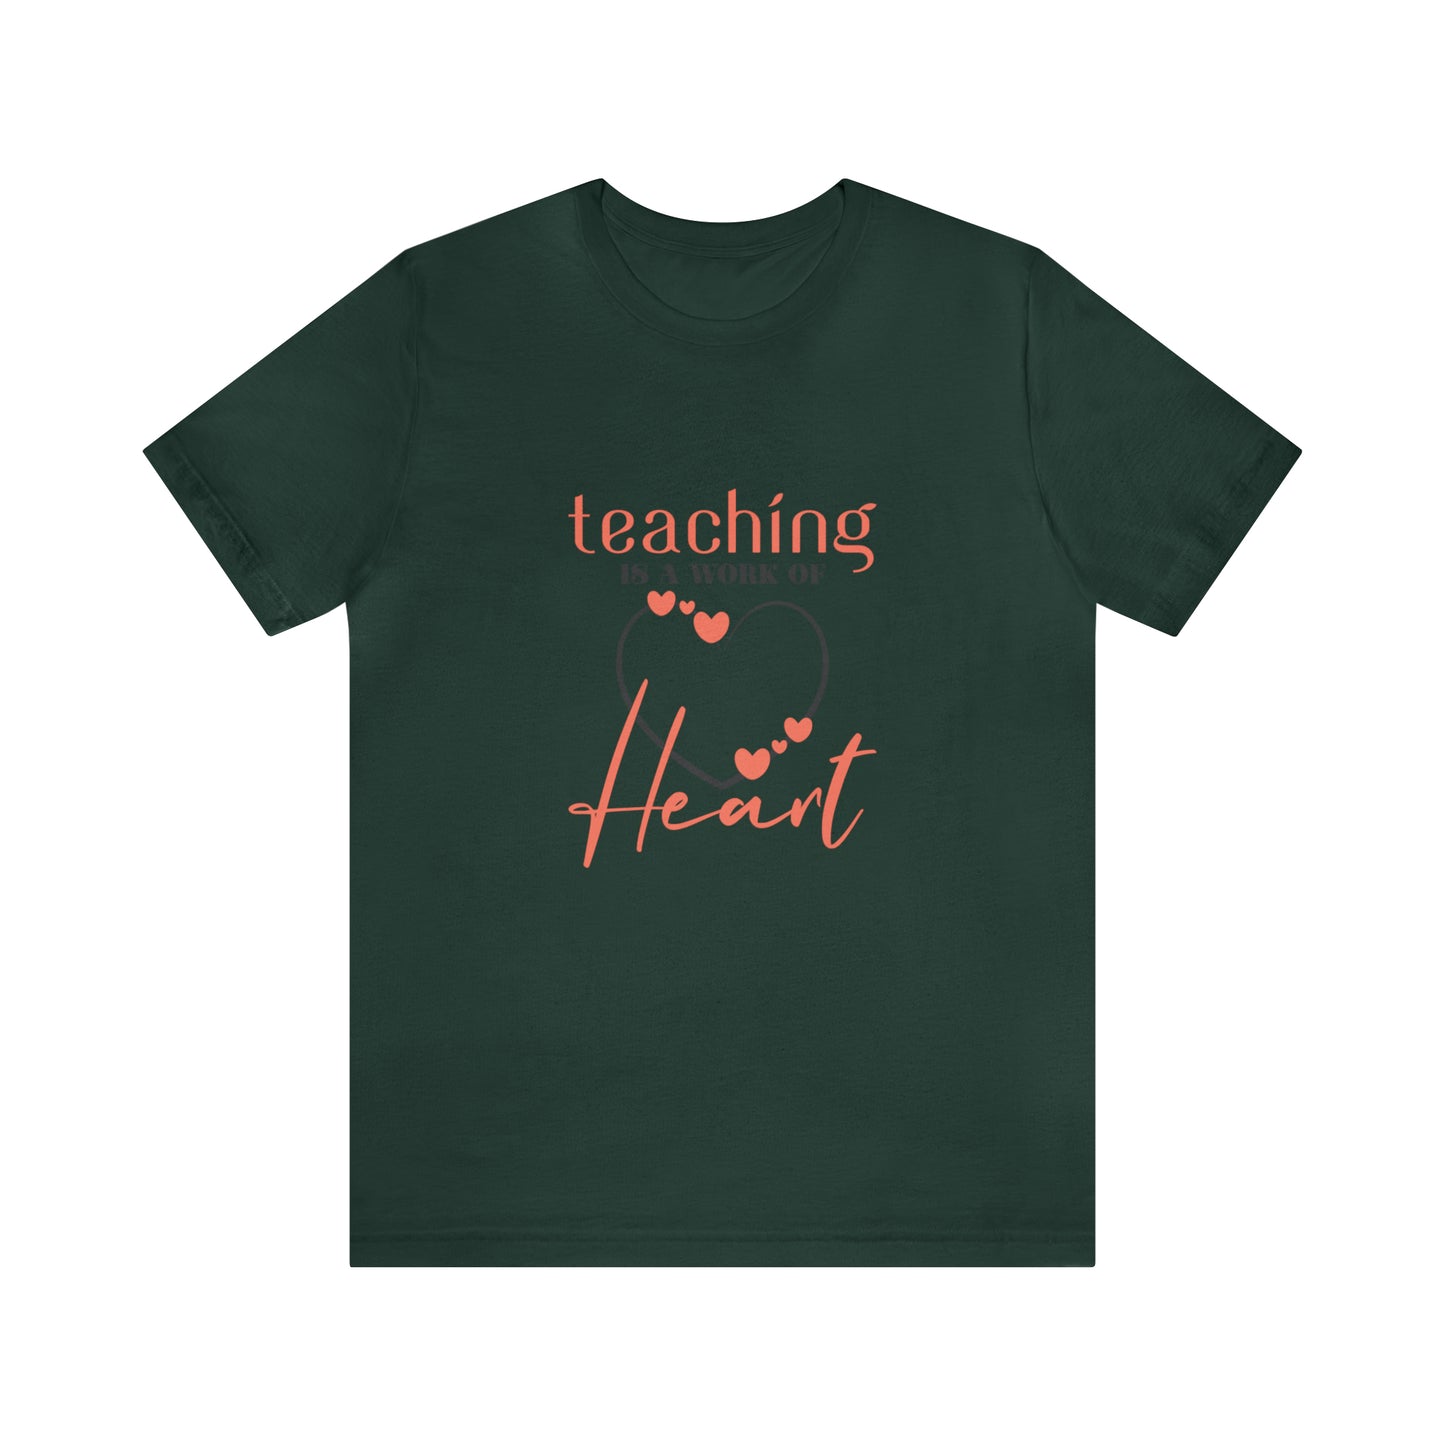 Teaching is a work of heart Short Sleeve Women's Tee